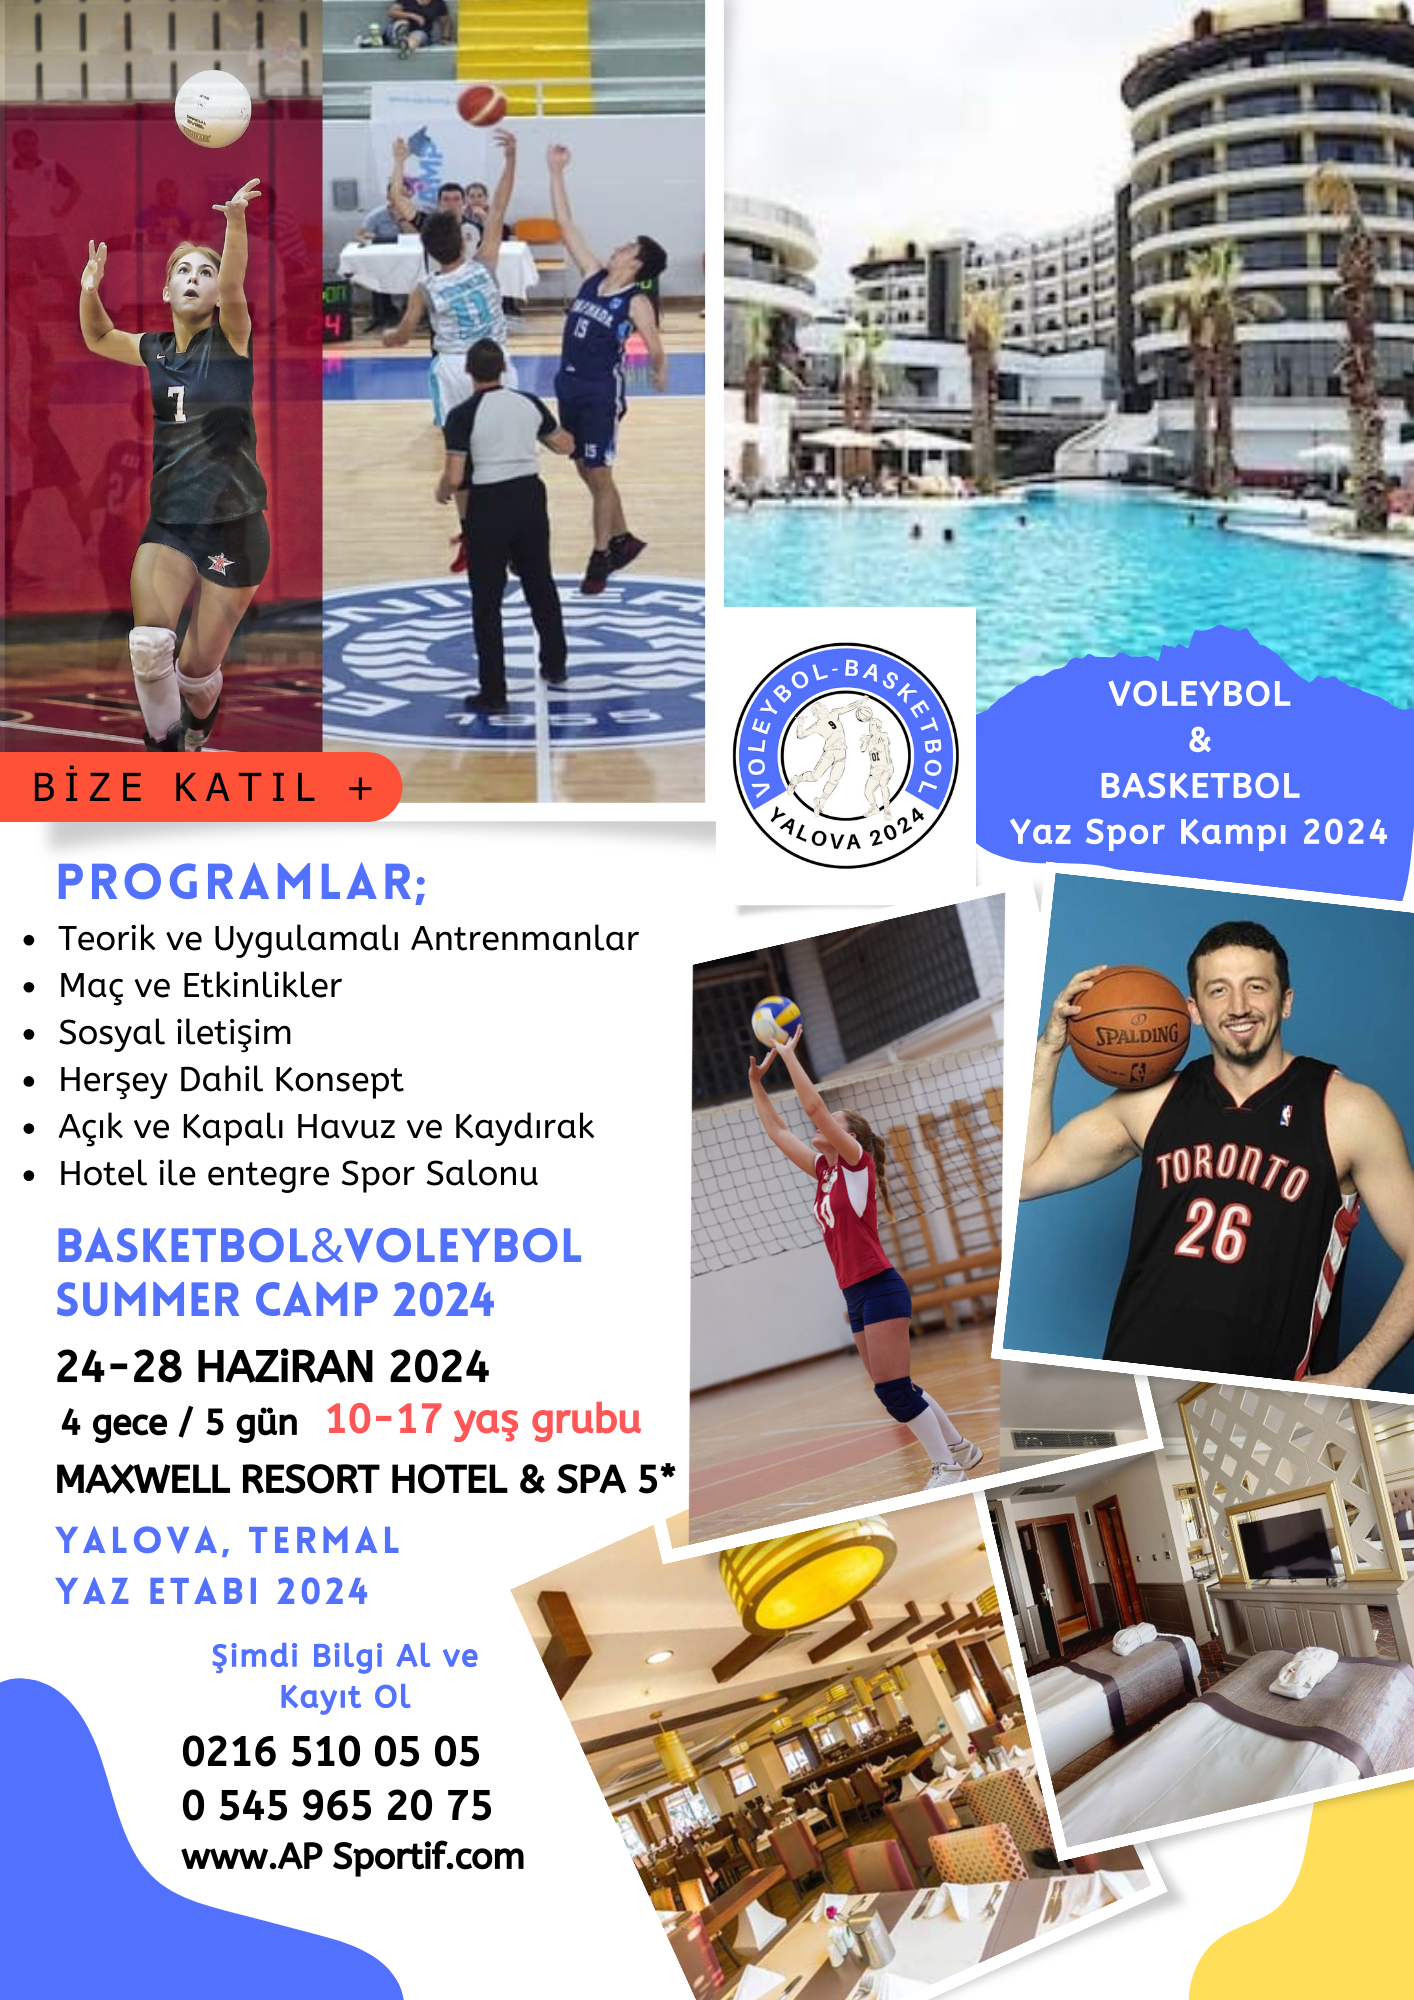 <p>24-28 Haziran (Pazartesi gidiş-Cuma d&ouml;n&uuml;ş) tarihlerinde İstanbul'a yakın konumda ve uygun şartlarda Yalova, Termal b&ouml;lgesindeki Maxwell Resort Hotel&amp;SPA tesislerinde ger&ccedil;ekleşecek kampımızın bilgilerini aşağıdaki dosyada sizlerle paylaşıyoruz.<br />2007-2014 arası doğumlu sporcularımız kampımıza katılabilecek olup, 2015 doğumlu sporcularımız i&ccedil;in antren&ouml;rlerimizden onay almanızı rica ederiz. 2015 doğumlu sporcular velileriyle katılabilecektir ancak gelmek isteyen diğer yaş grubu velilerimizin idari sorumlumuza bilgi vermelerini rica ederiz. Bu velilerimize daha sonra d&ouml;n&uuml;ş yapılacaktır. <br />Velilerimizi yararlanabileceği Termal otel konseptindeki Maxwell Resort Hotel&amp;SPA;<br />Tam donanımlı profesyonel 6000 m&sup2; SPA merkezimizde; Masaj Odaları, Jakuzi, Havuz, Vip Terapi Odaları,<br />G&uuml;zellik Merkezi, Bakım Odaları, Tuz Odası, Sauna, Buhar Odası, &Ouml;zel Aile Hamamları, A&ccedil;ık ve Kapalı Termal Su Havuzları ve daha bir&ccedil;ok &ccedil;eşitlilikte hizmetler sunmaktadır.<br />Otel şehir merkezine 8 Km, Bursa ve İstanbul&rsquo;a 1 saatlik mesafededir.</p>